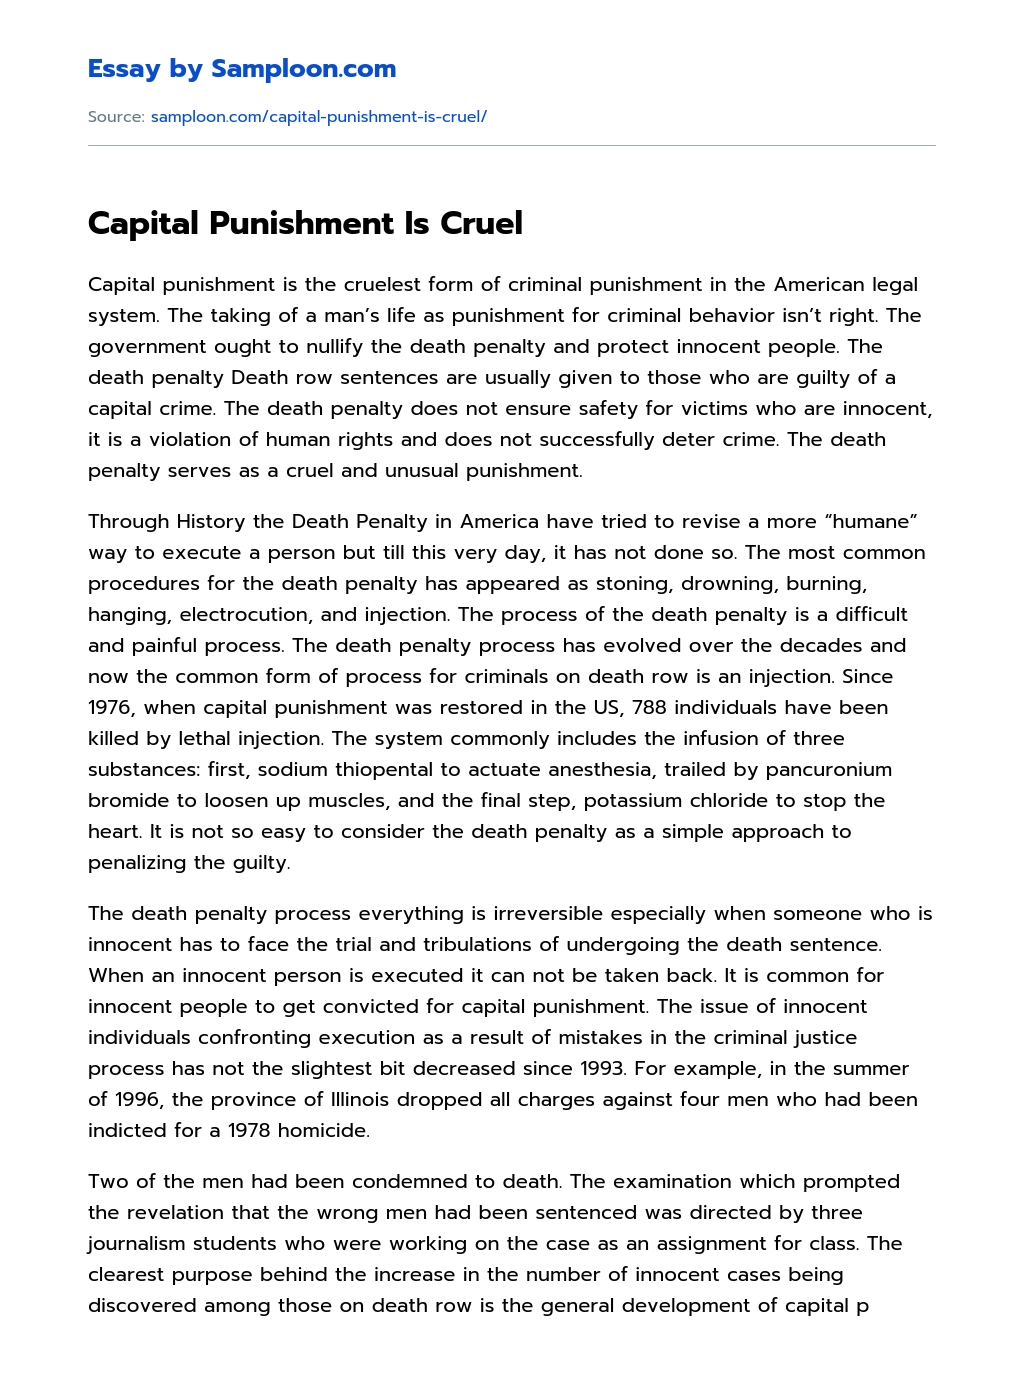 Capital Punishment Is Cruel essay